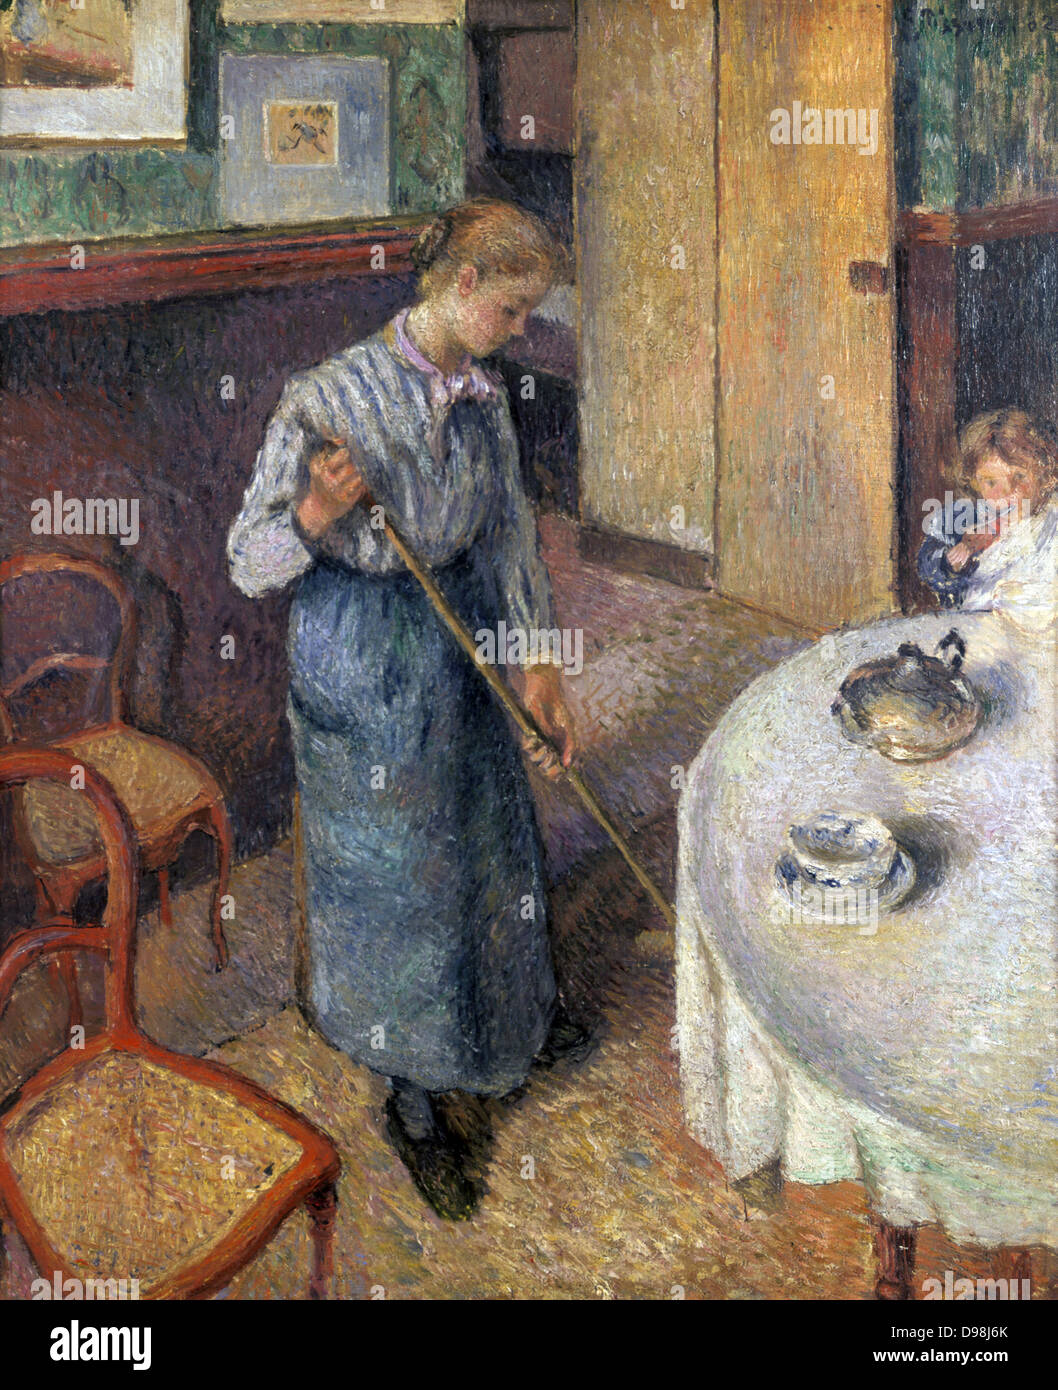 Das kleine Land Maid", 1882, Öl auf Leinwand. Camille Pissarro (1830-1909), französischer Maler des Impressionismus. Häusliche Interieur mit jungen Mädchen, das Fegen der Boden unter einem Esstisch mit einem Besen. Stockfoto